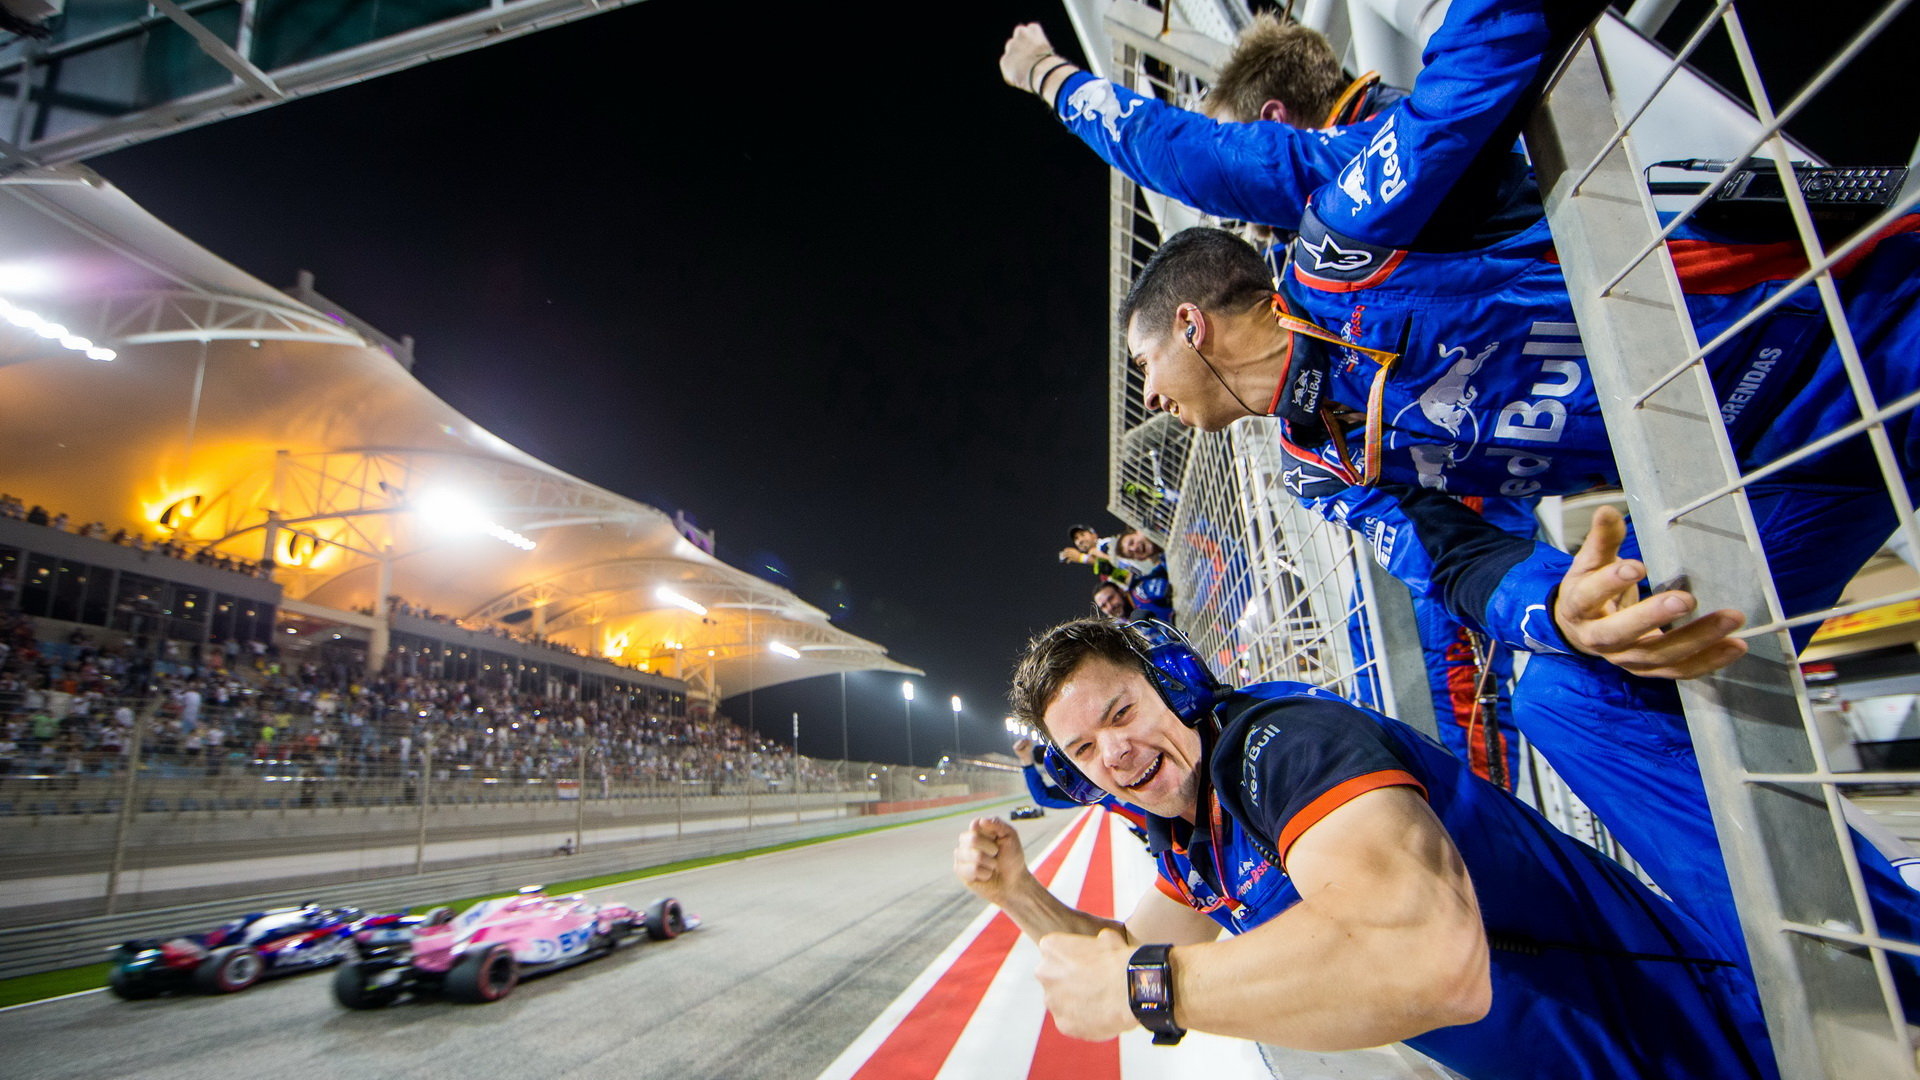 Mechanici Pierra Gaslyho se raduje s fenomenálního 4. místa v závodě v Bahrajnu